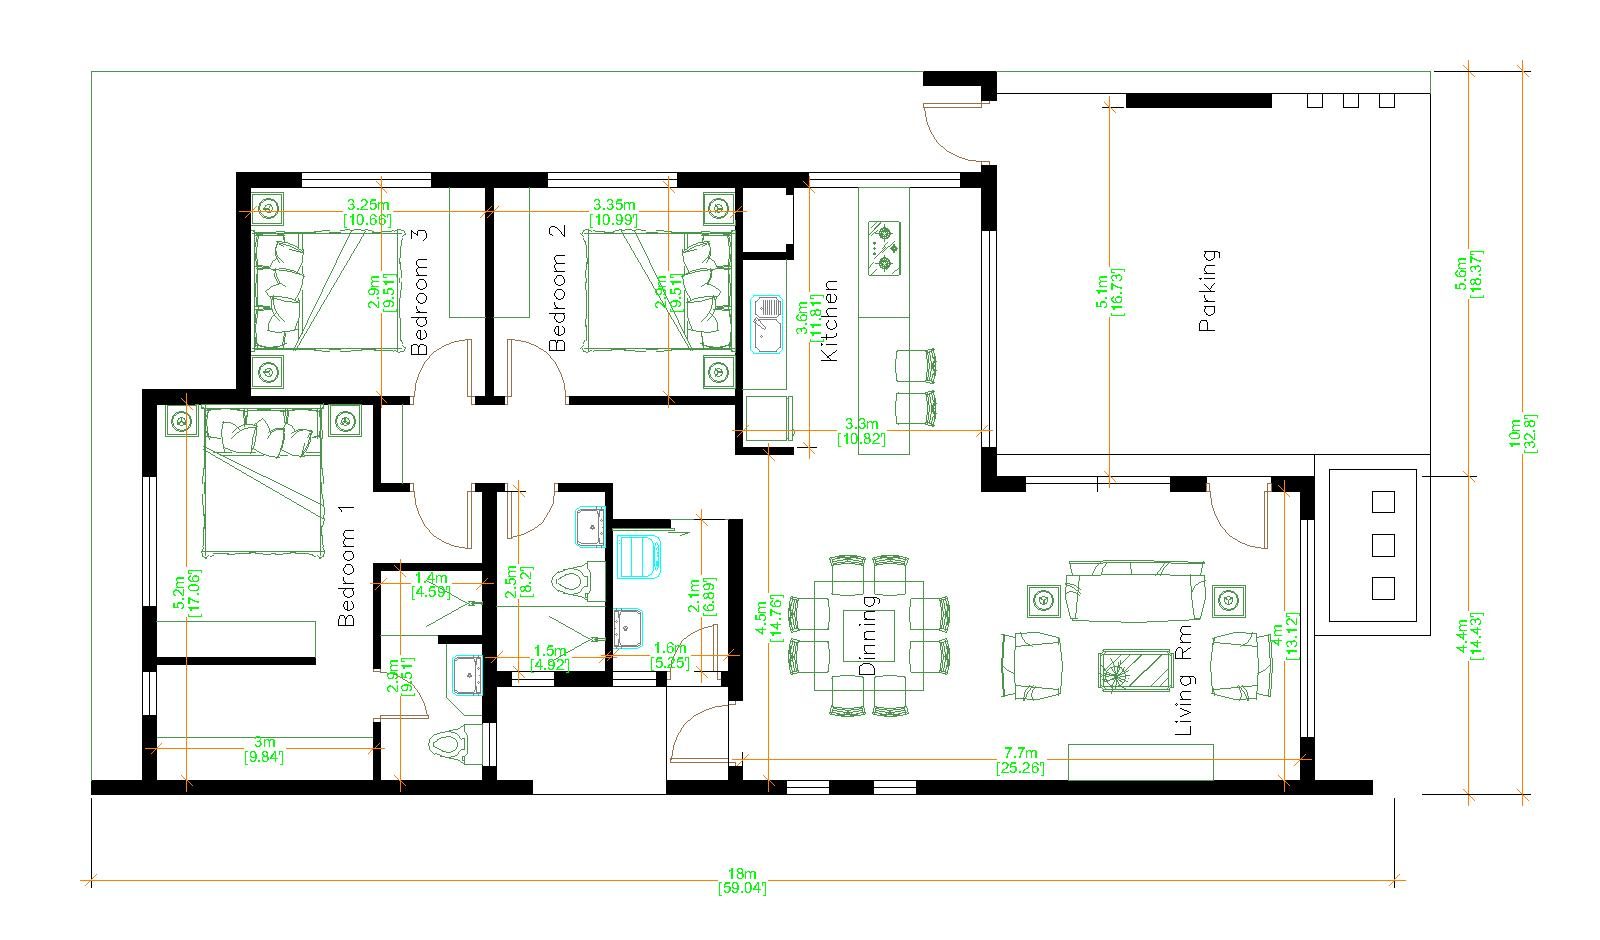 House Design 3d 10x18 Meter 33x59 Feet 3 Bedrooms Terrace Roof